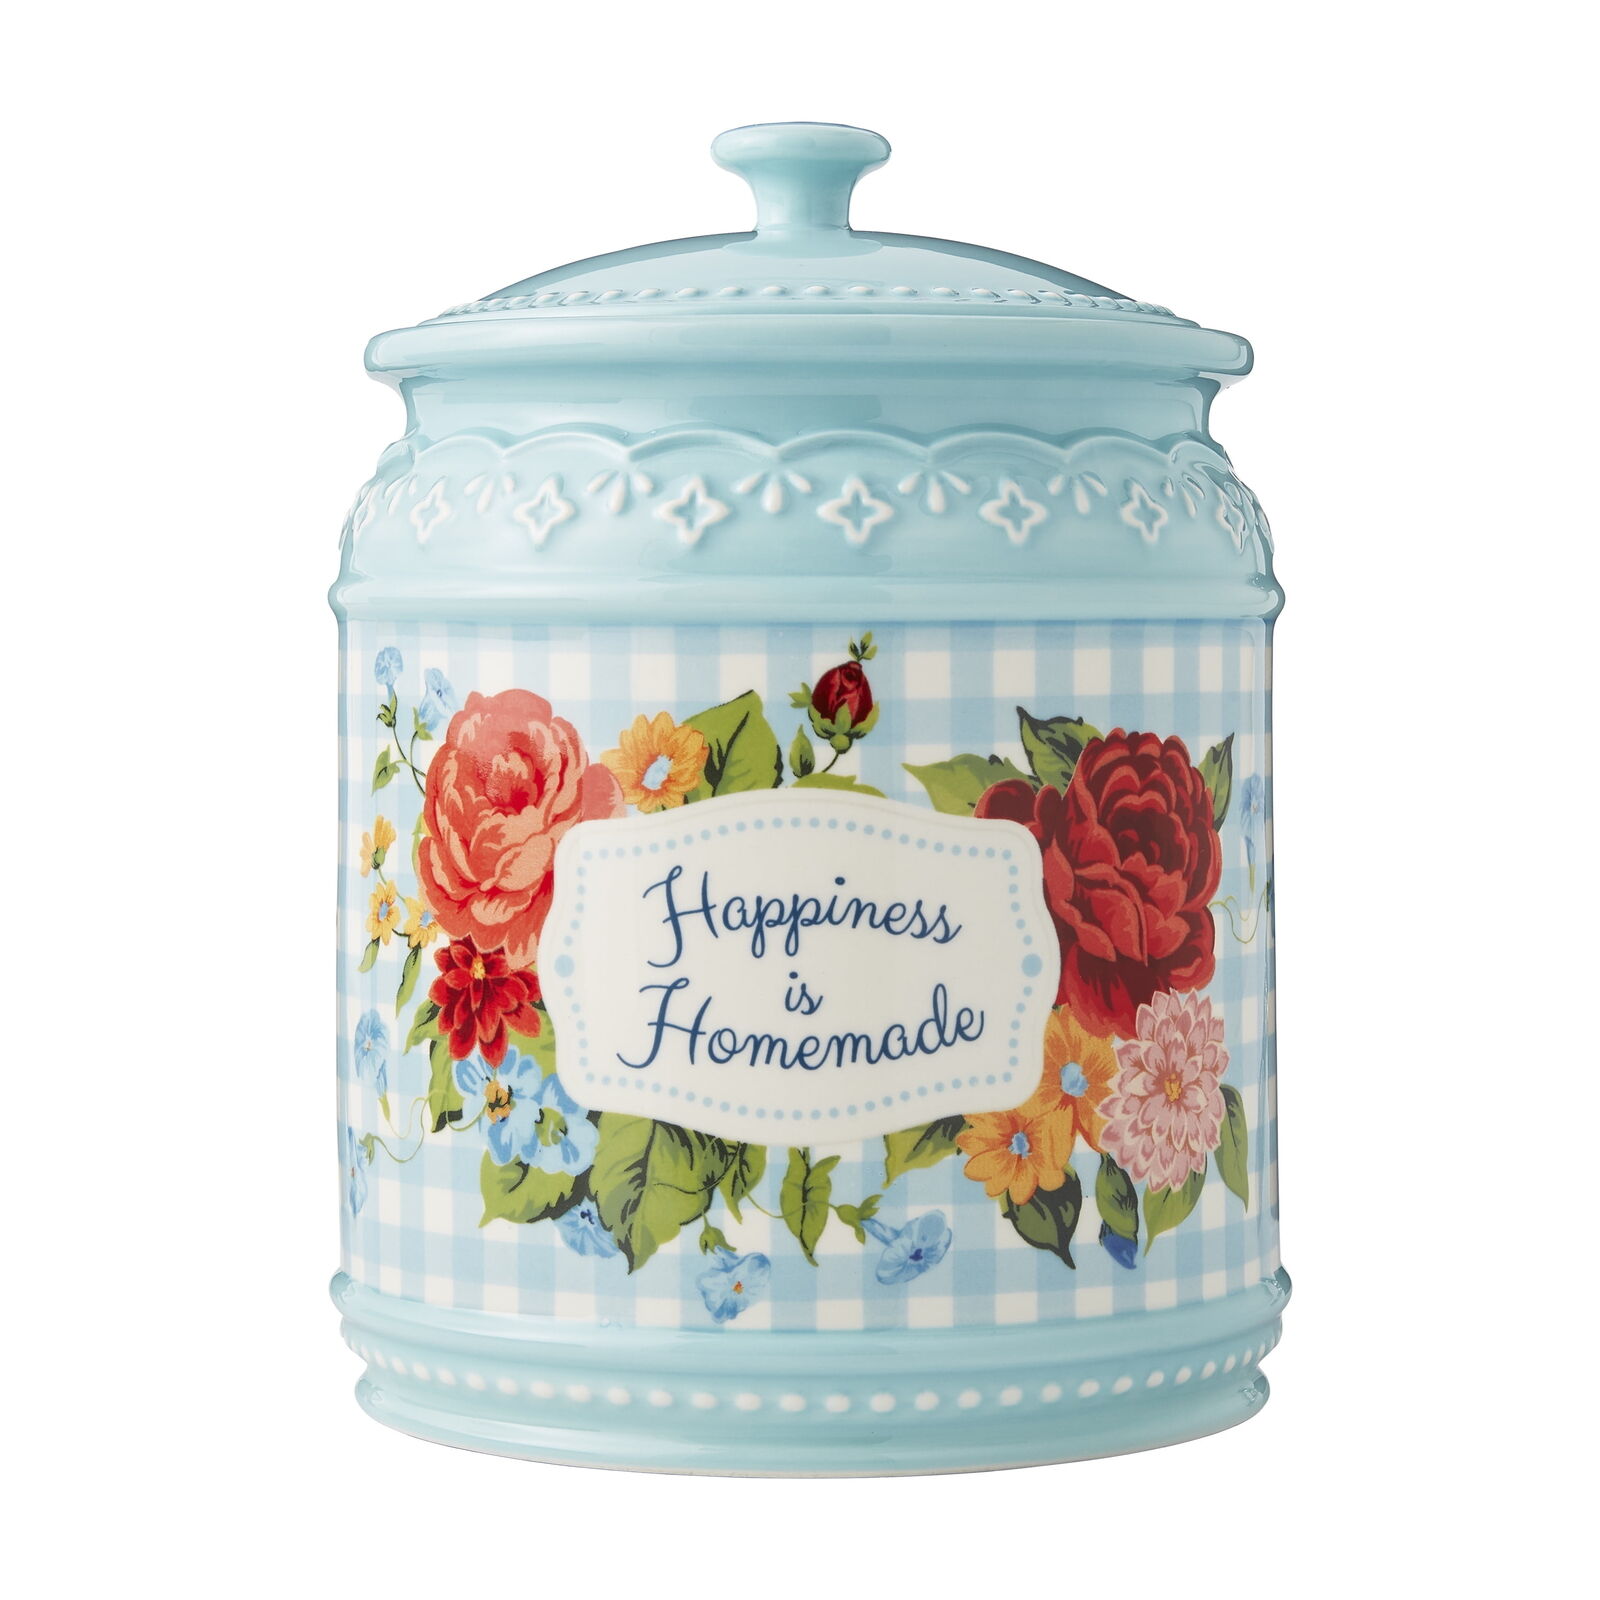 Happiness Is Homemade Stoneware Cookie Jar Kitchen Storage & Organization 